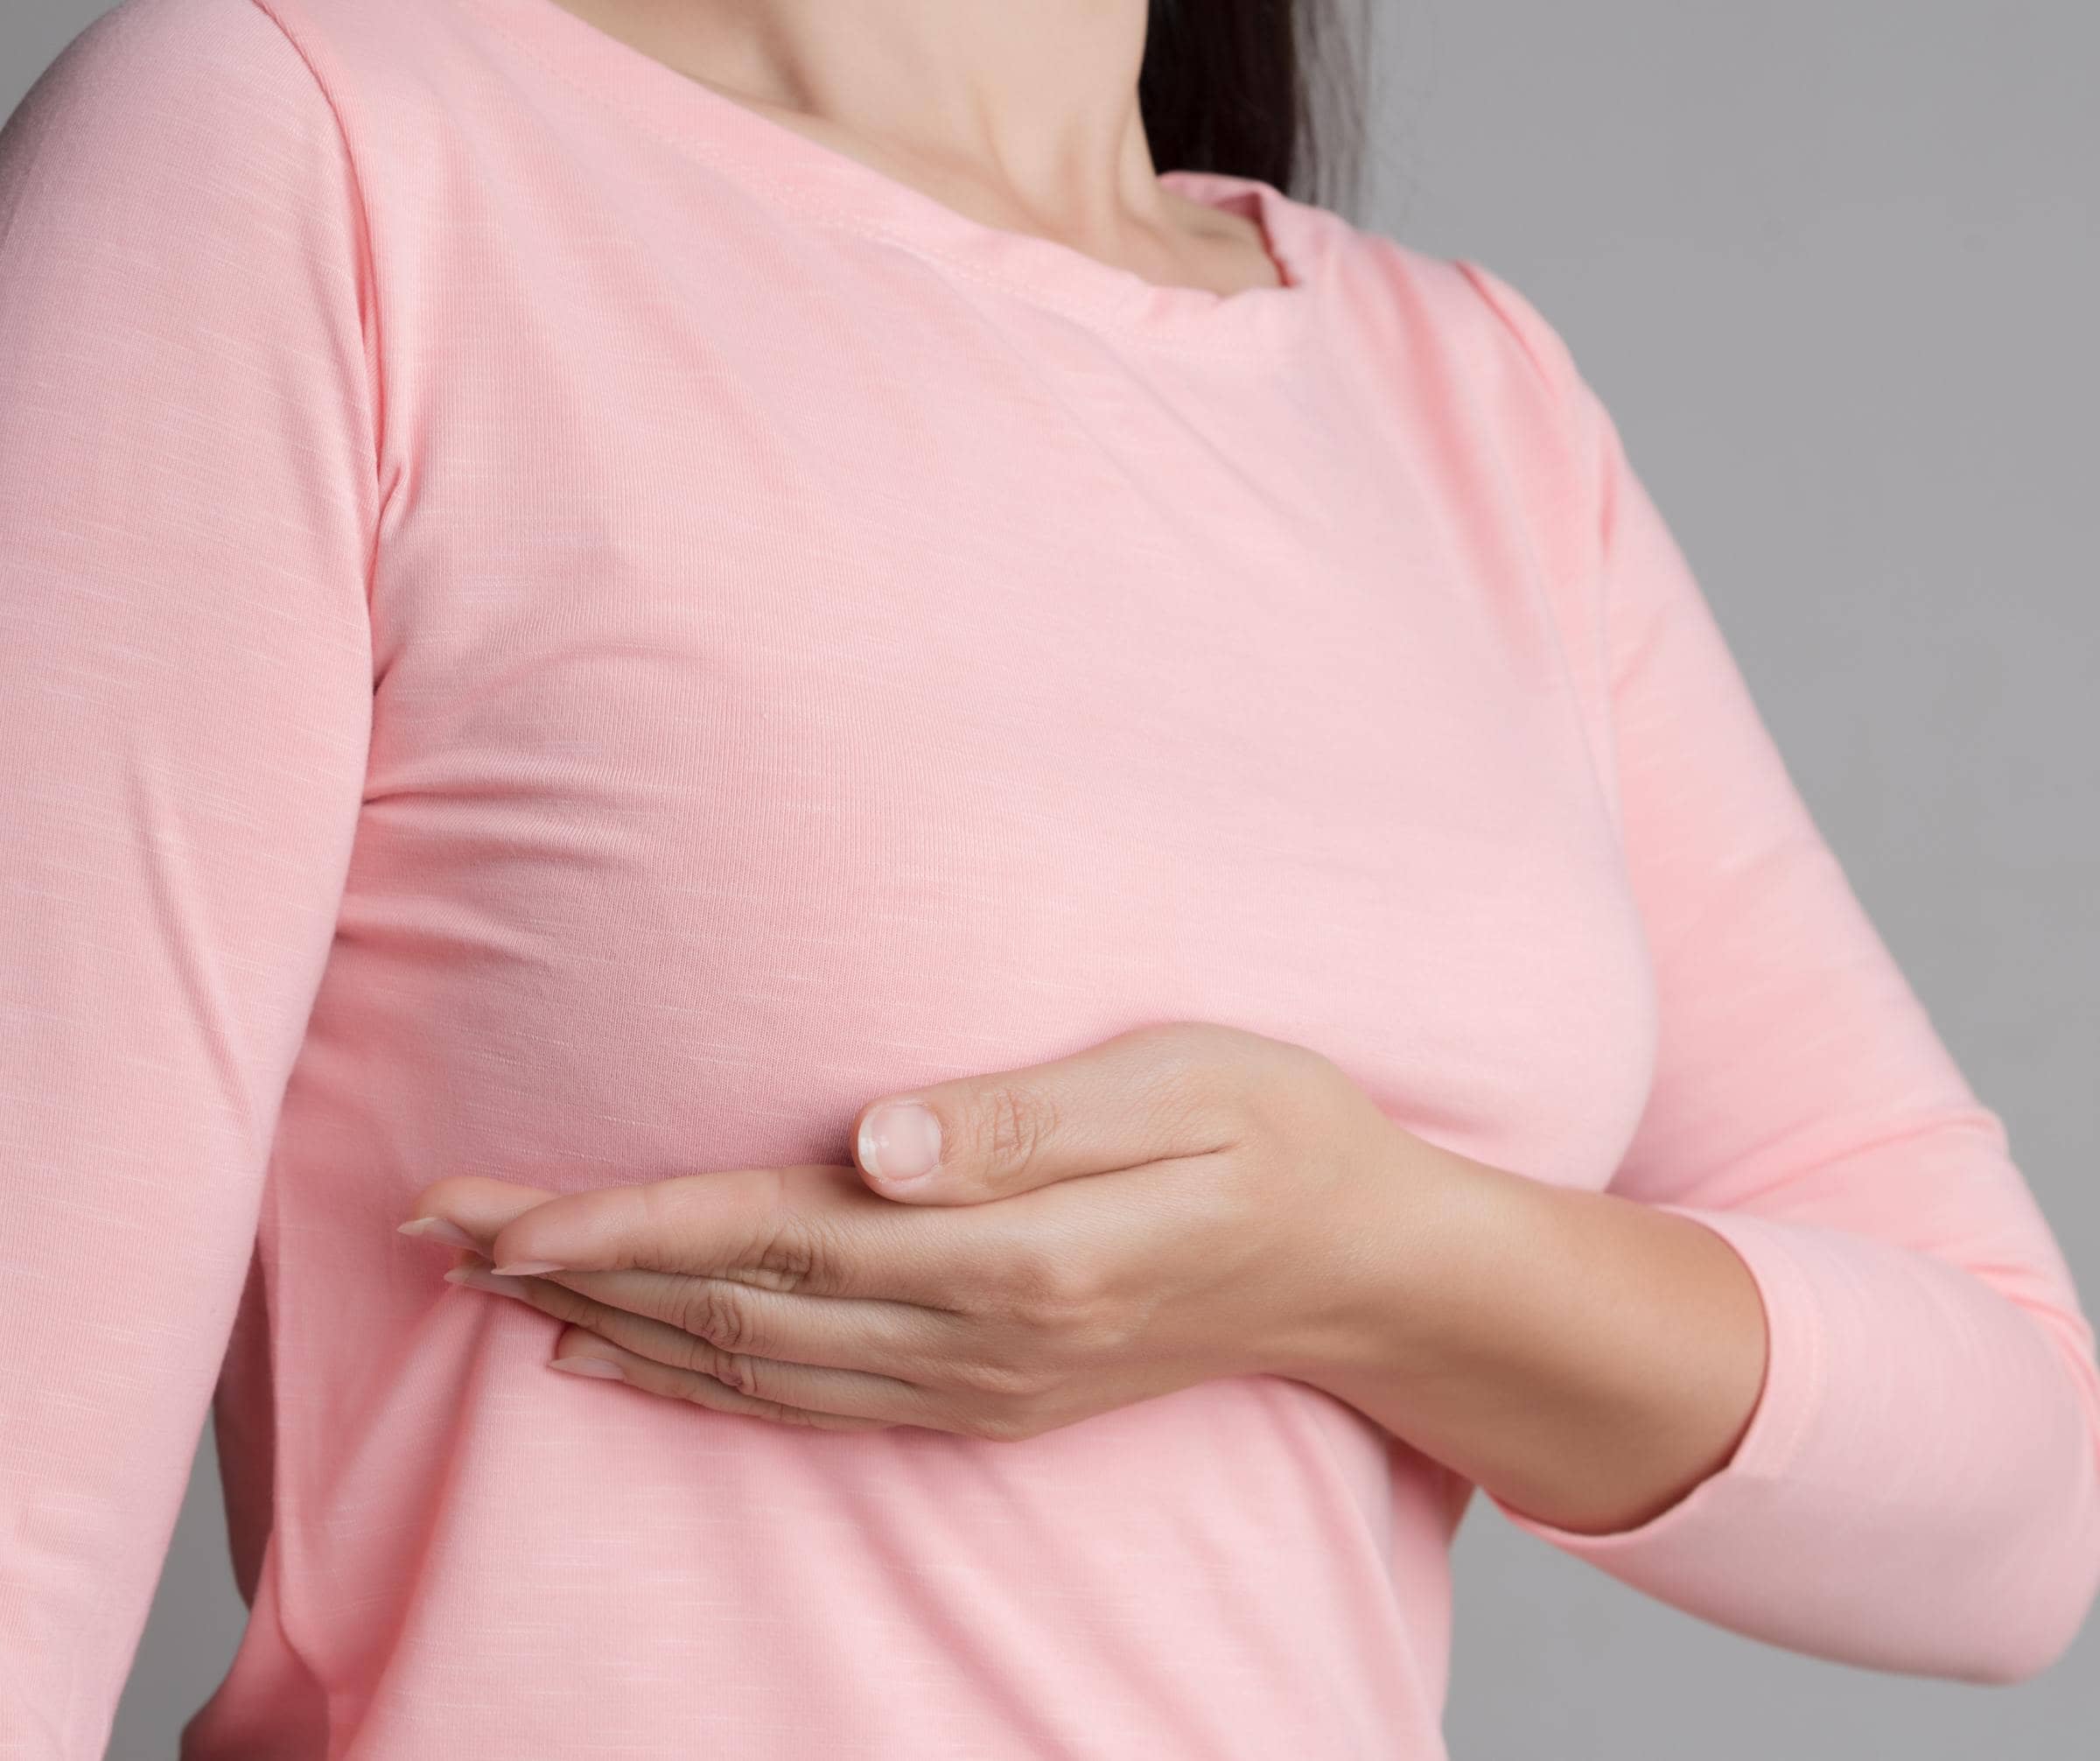 Que faire pour ne plus avoir les seins qui tombent ? | Dr Corinne Pachet | Paris